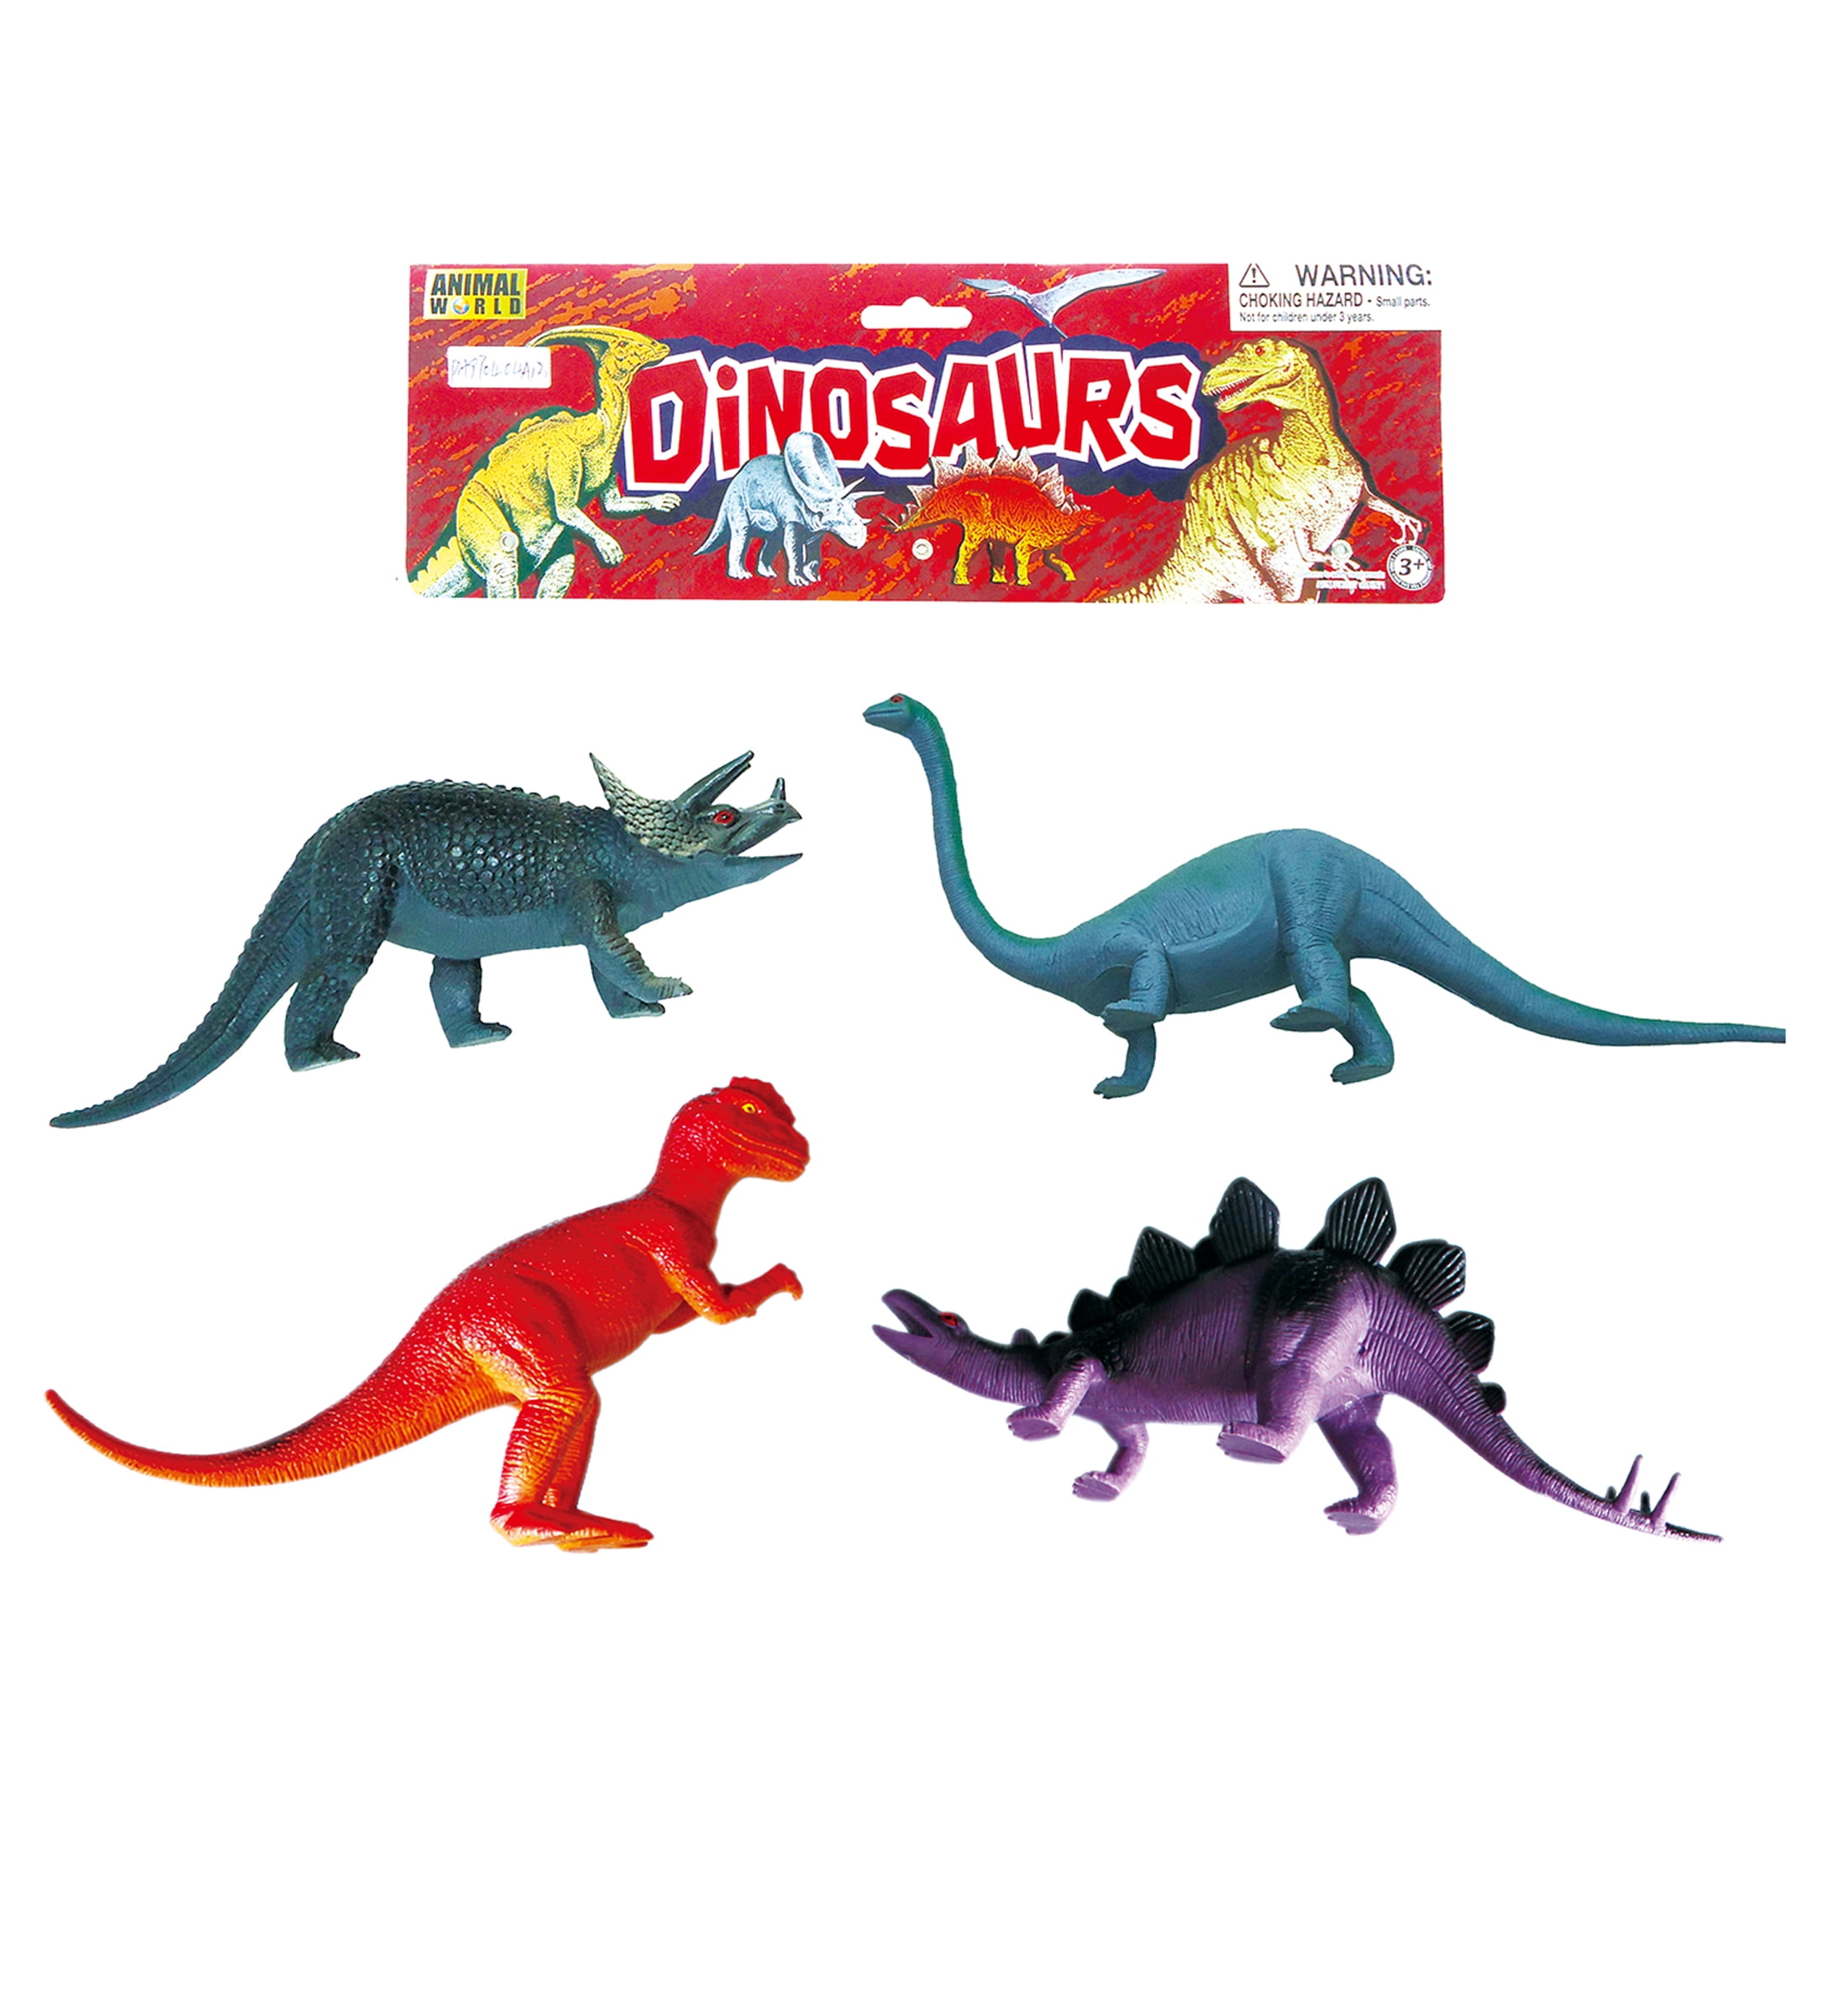 4" T-Rex Robot Action Figure Animal Dinosaur Transformer Toys Kids Gifts Prizes 